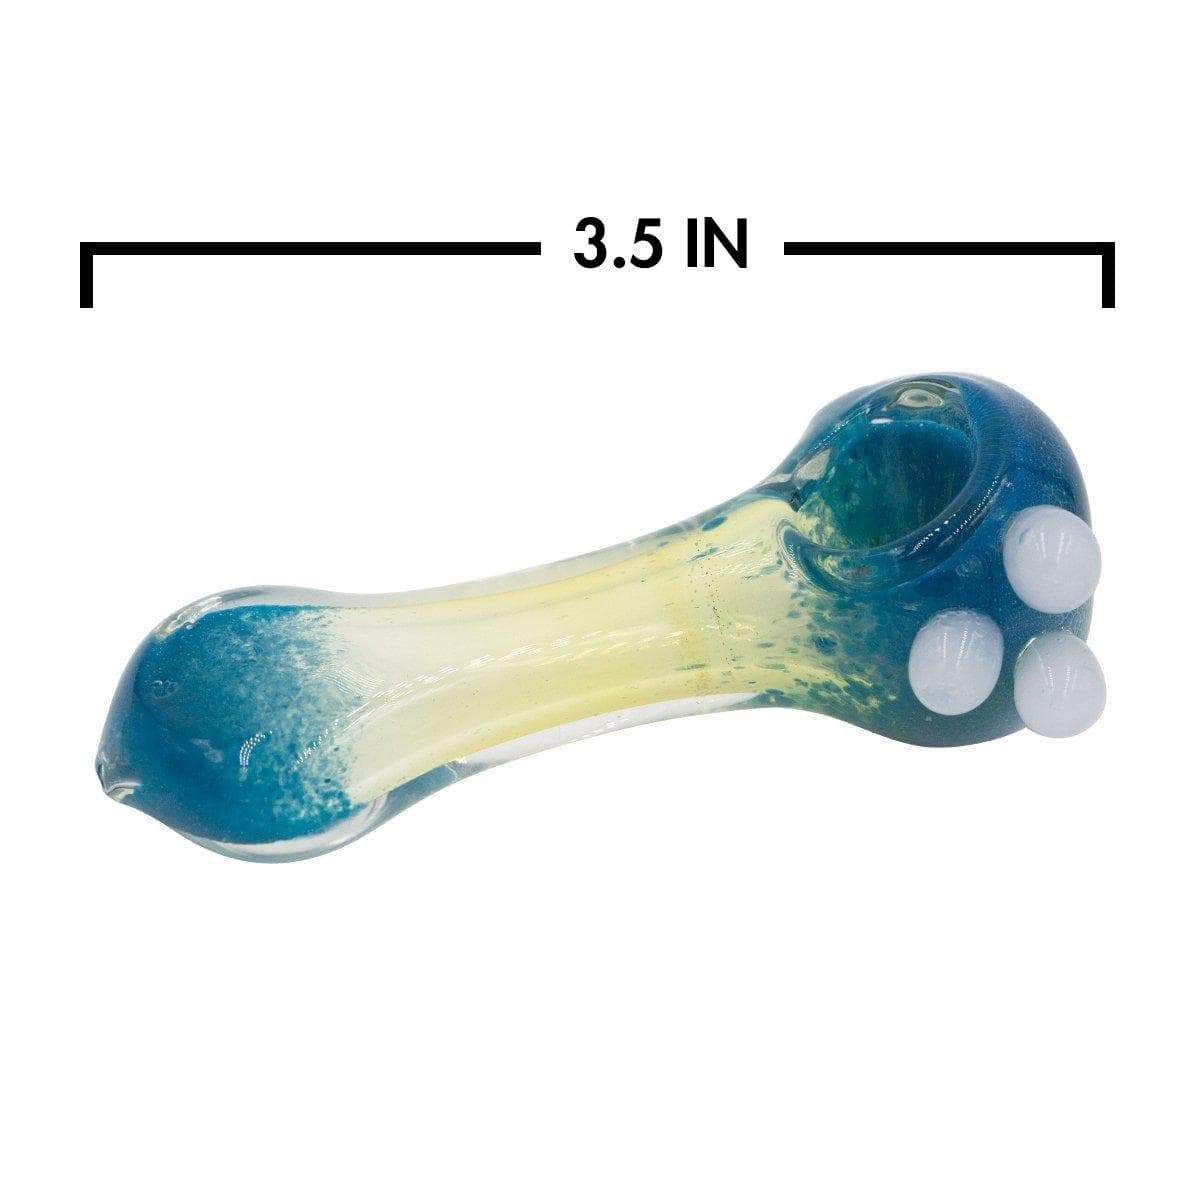 Komodo Glass Pipe - 4.5in